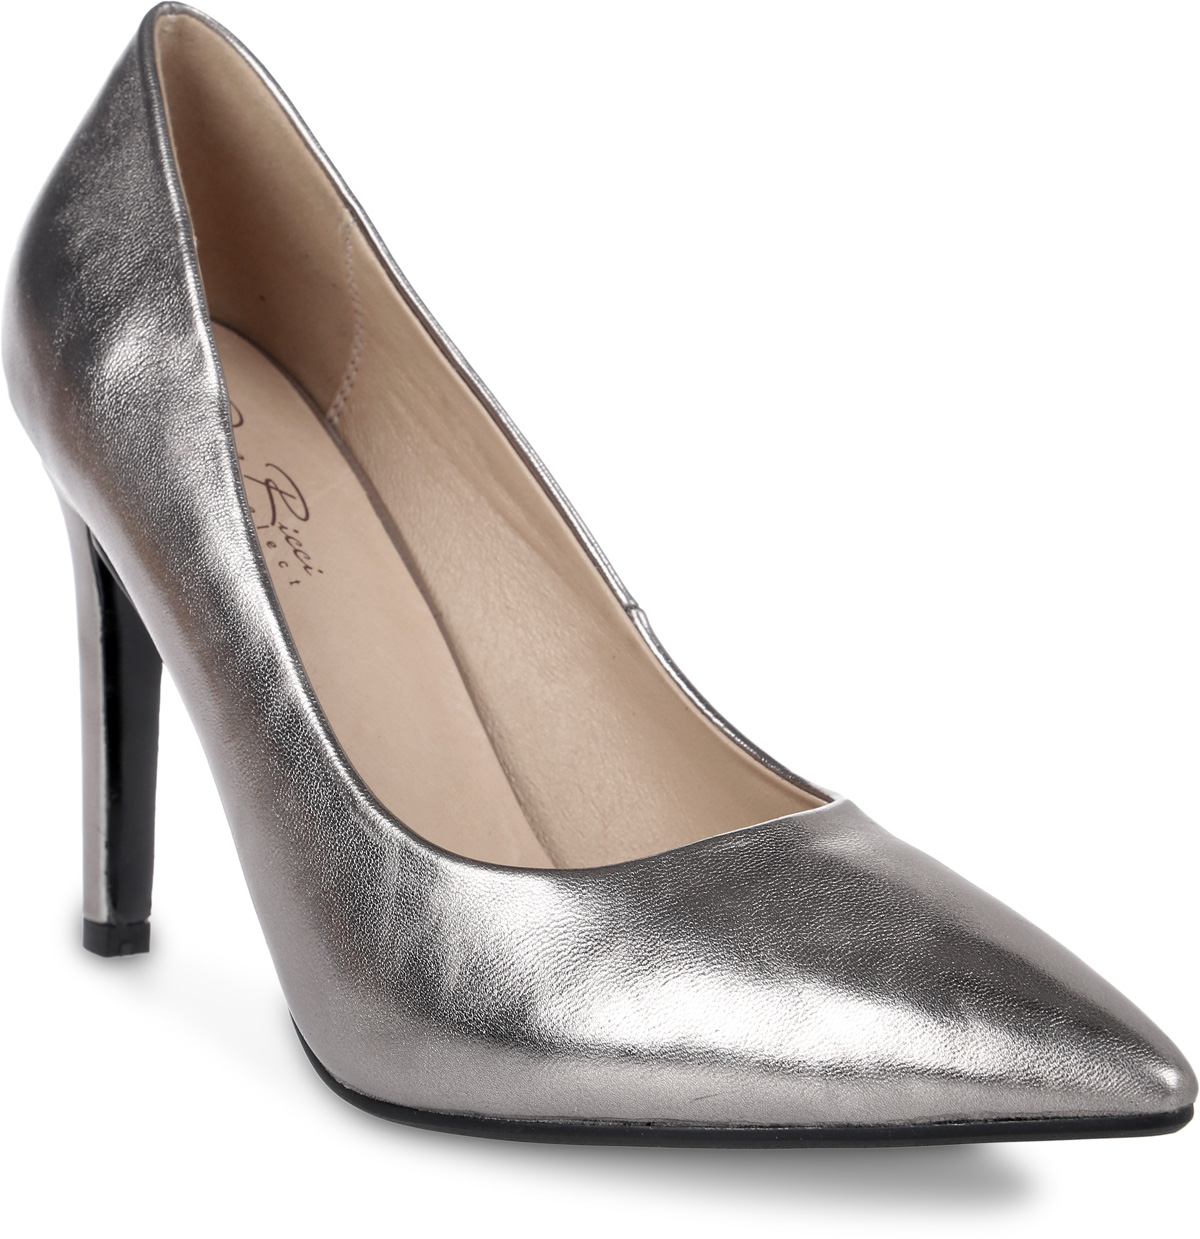 Туфли женские Dino Ricci, цвет: серый металлик. 435-199-01. Размер 37